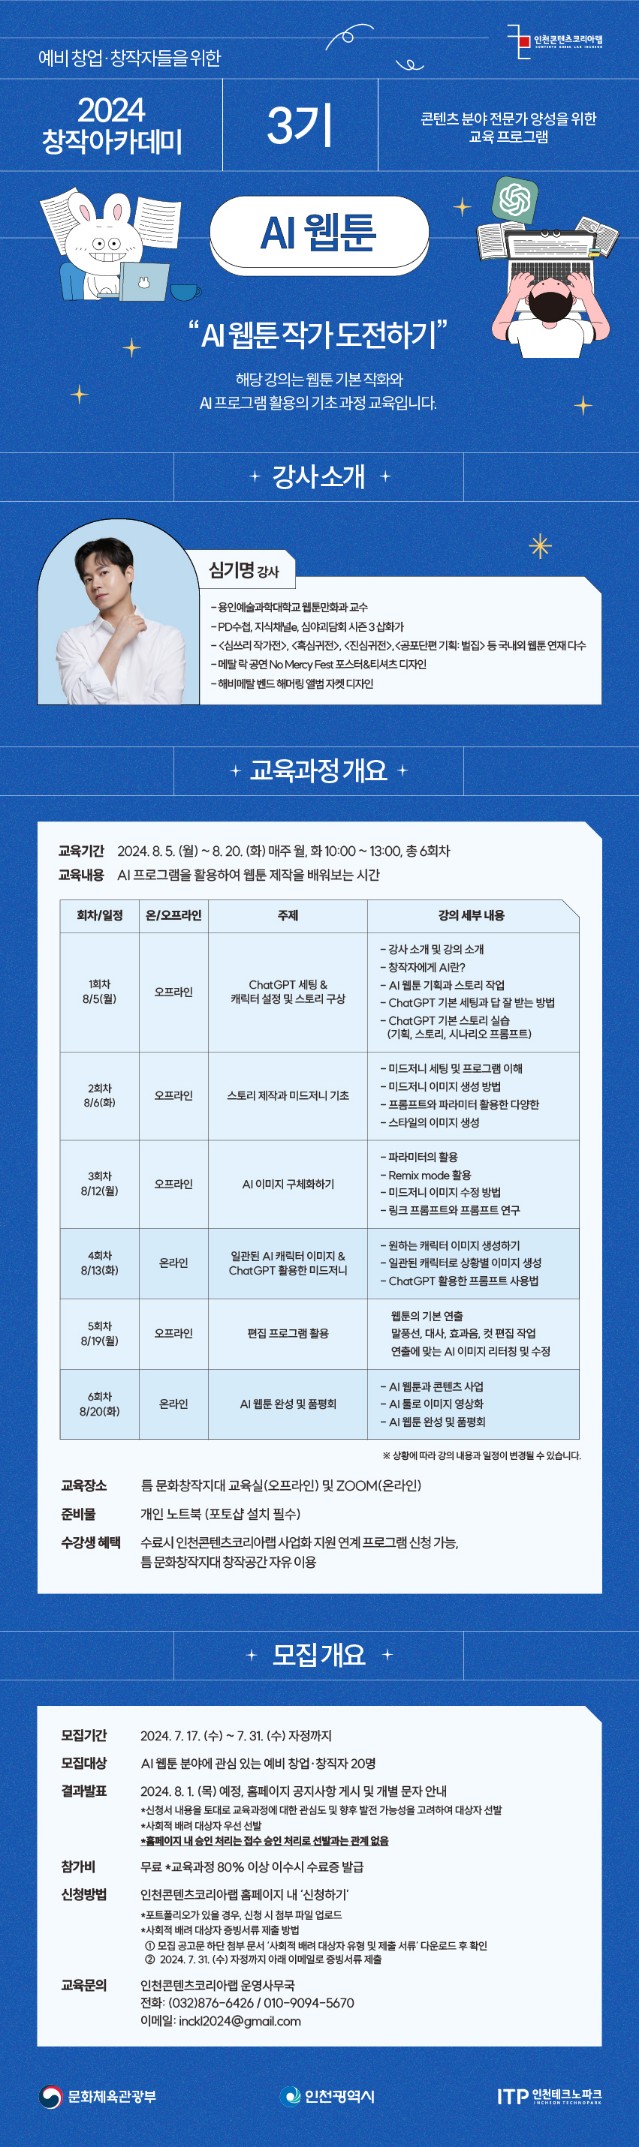 인천콘텐츠코리아랩 '2024 창작 아카데미 3기 - AI웹툰 과정' 수강생 모집